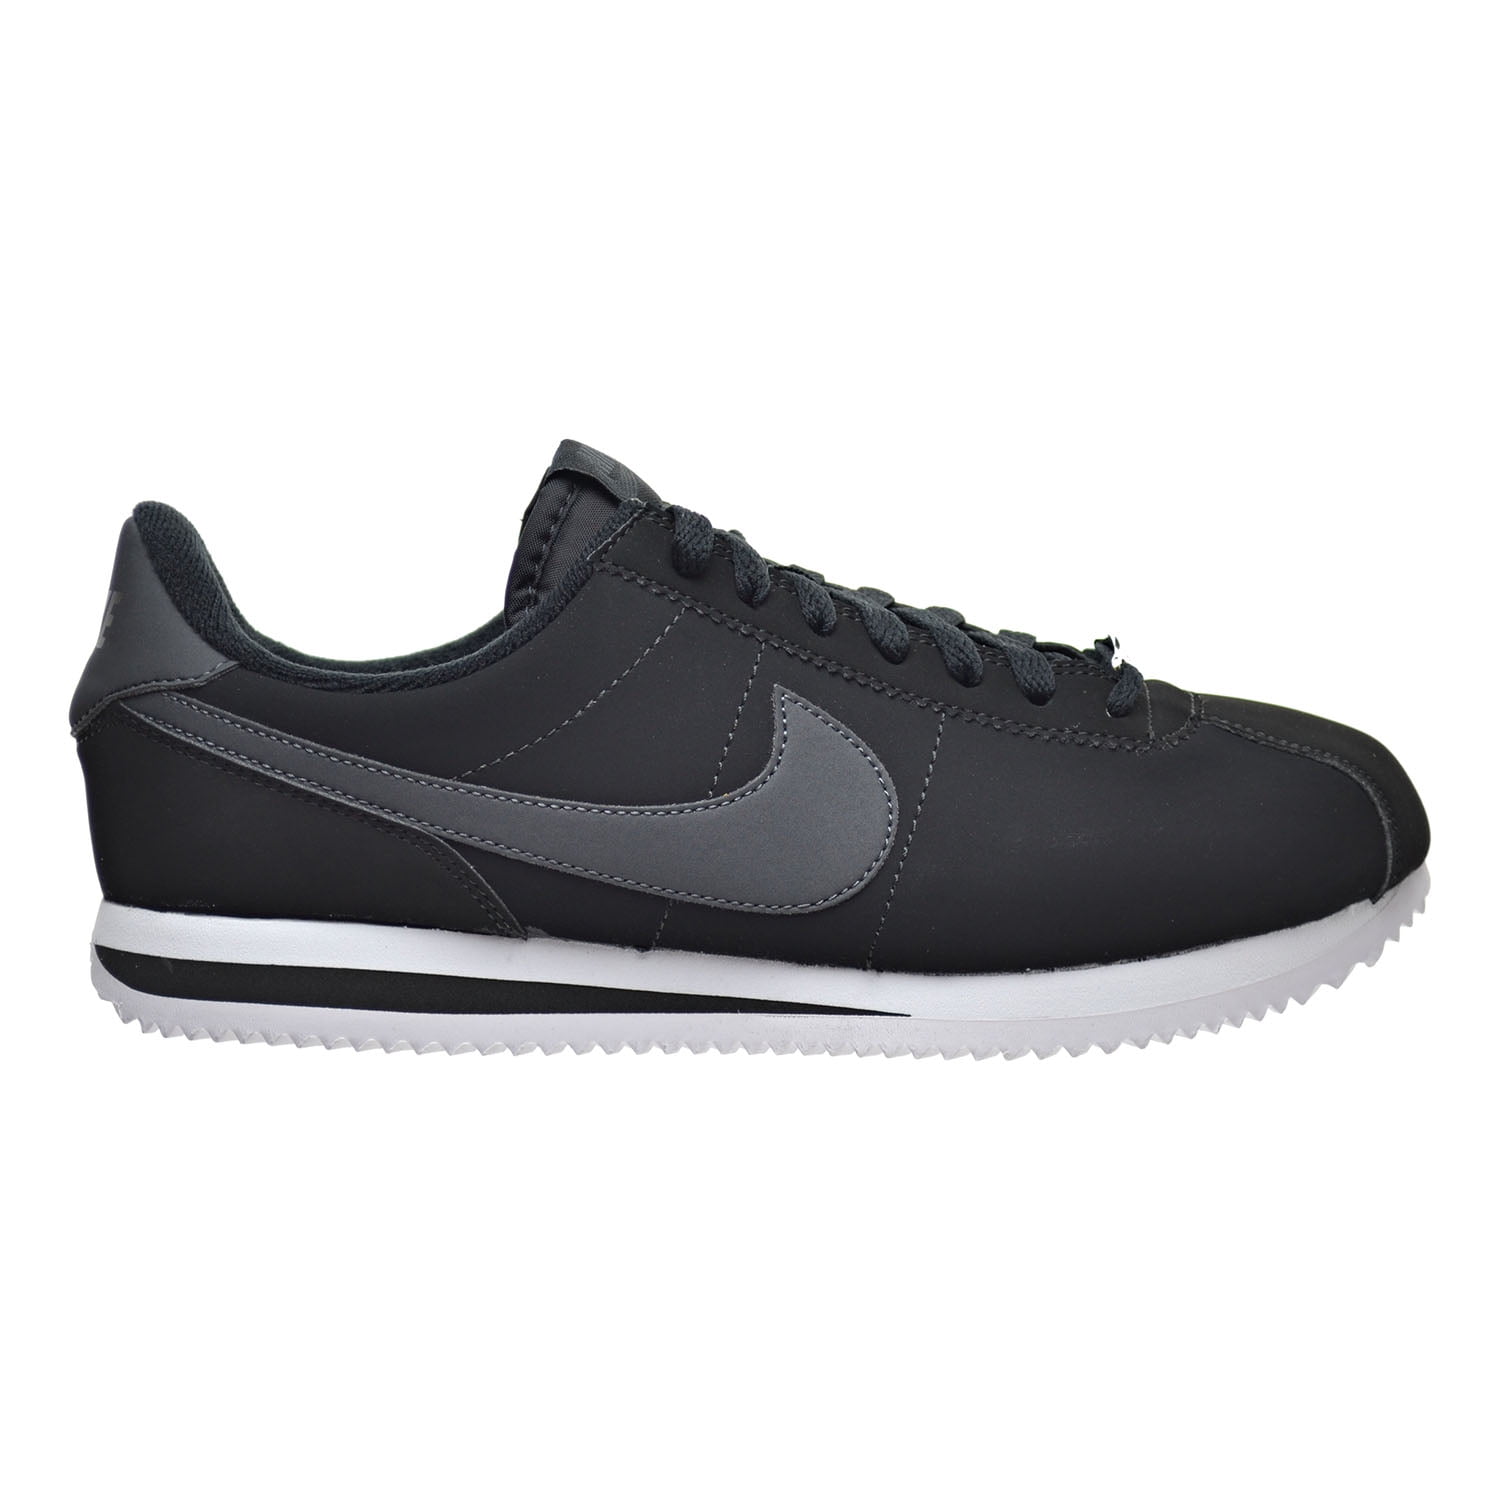 Nike Cortez Basic NBK Men's Shoes Black/White/Metallic Silver 820644 ...